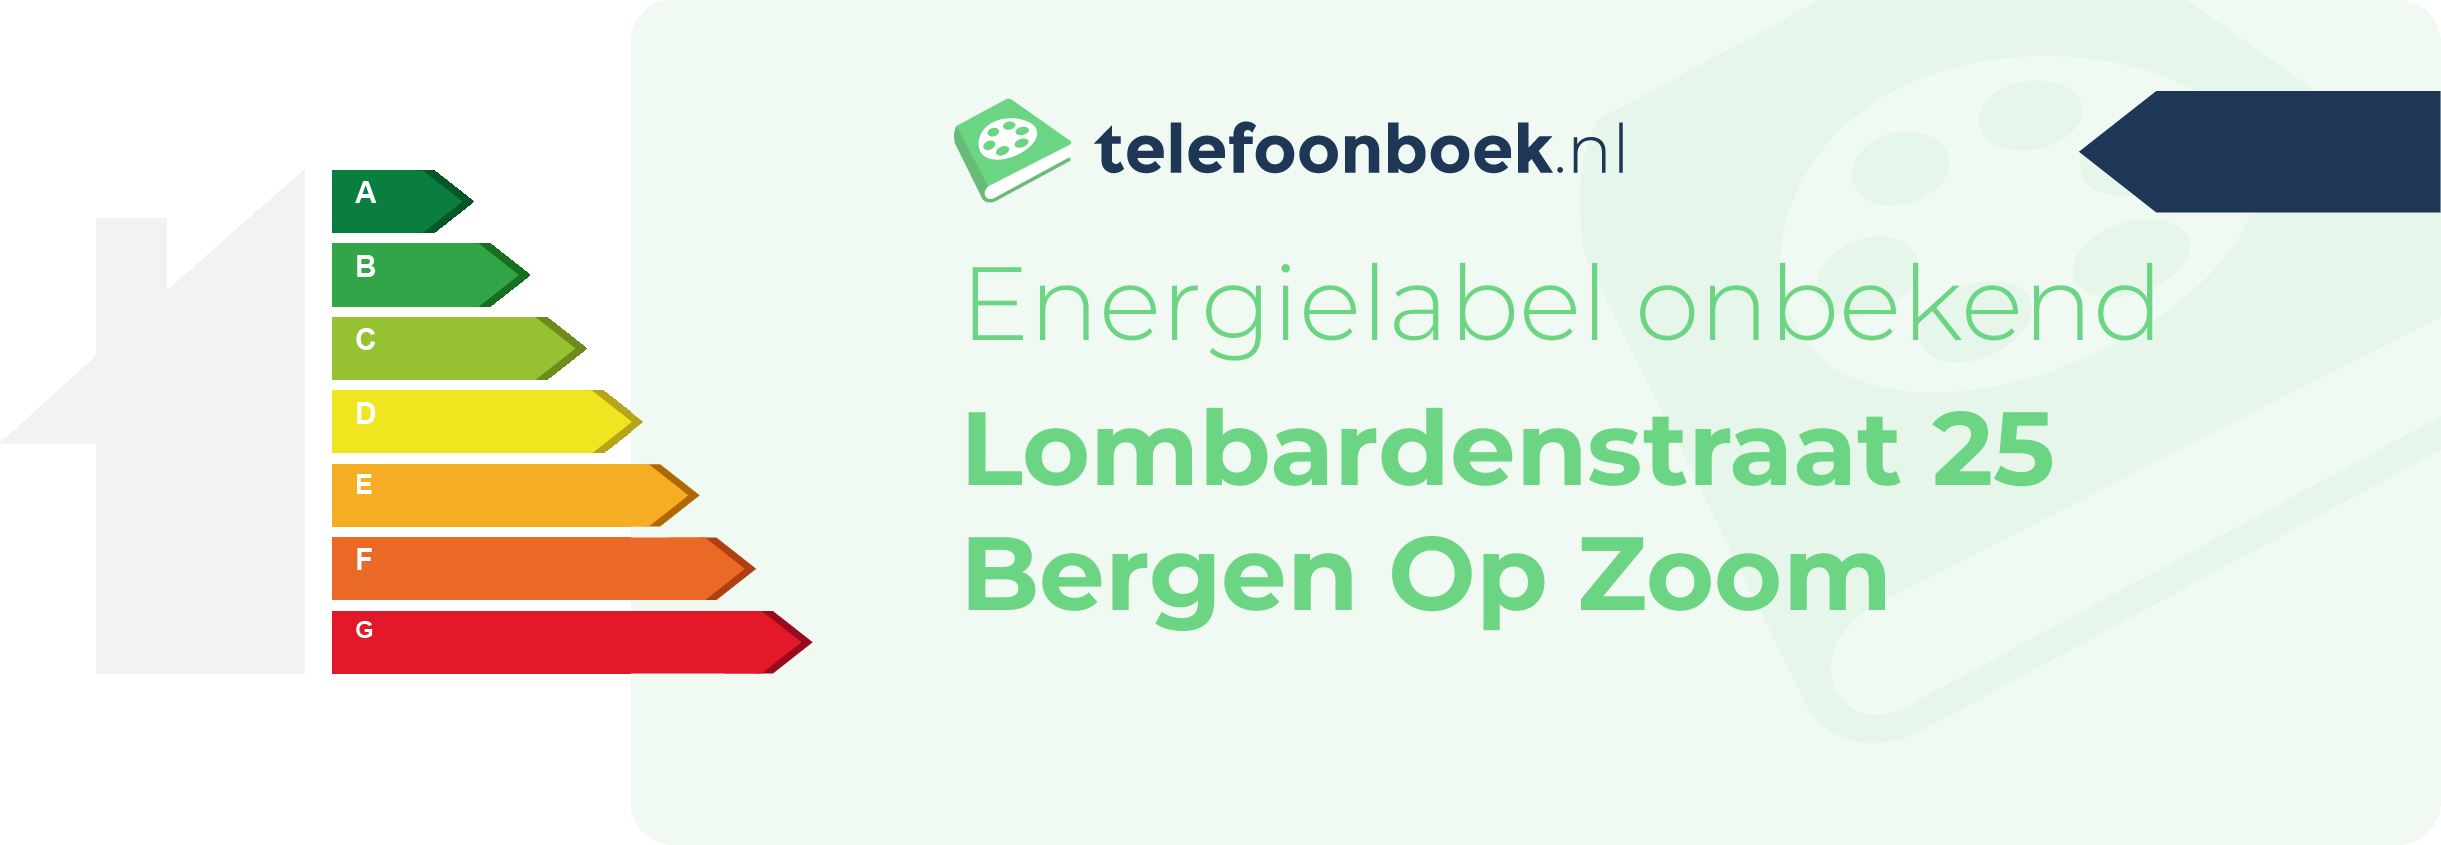 Energielabel Lombardenstraat 25 Bergen Op Zoom